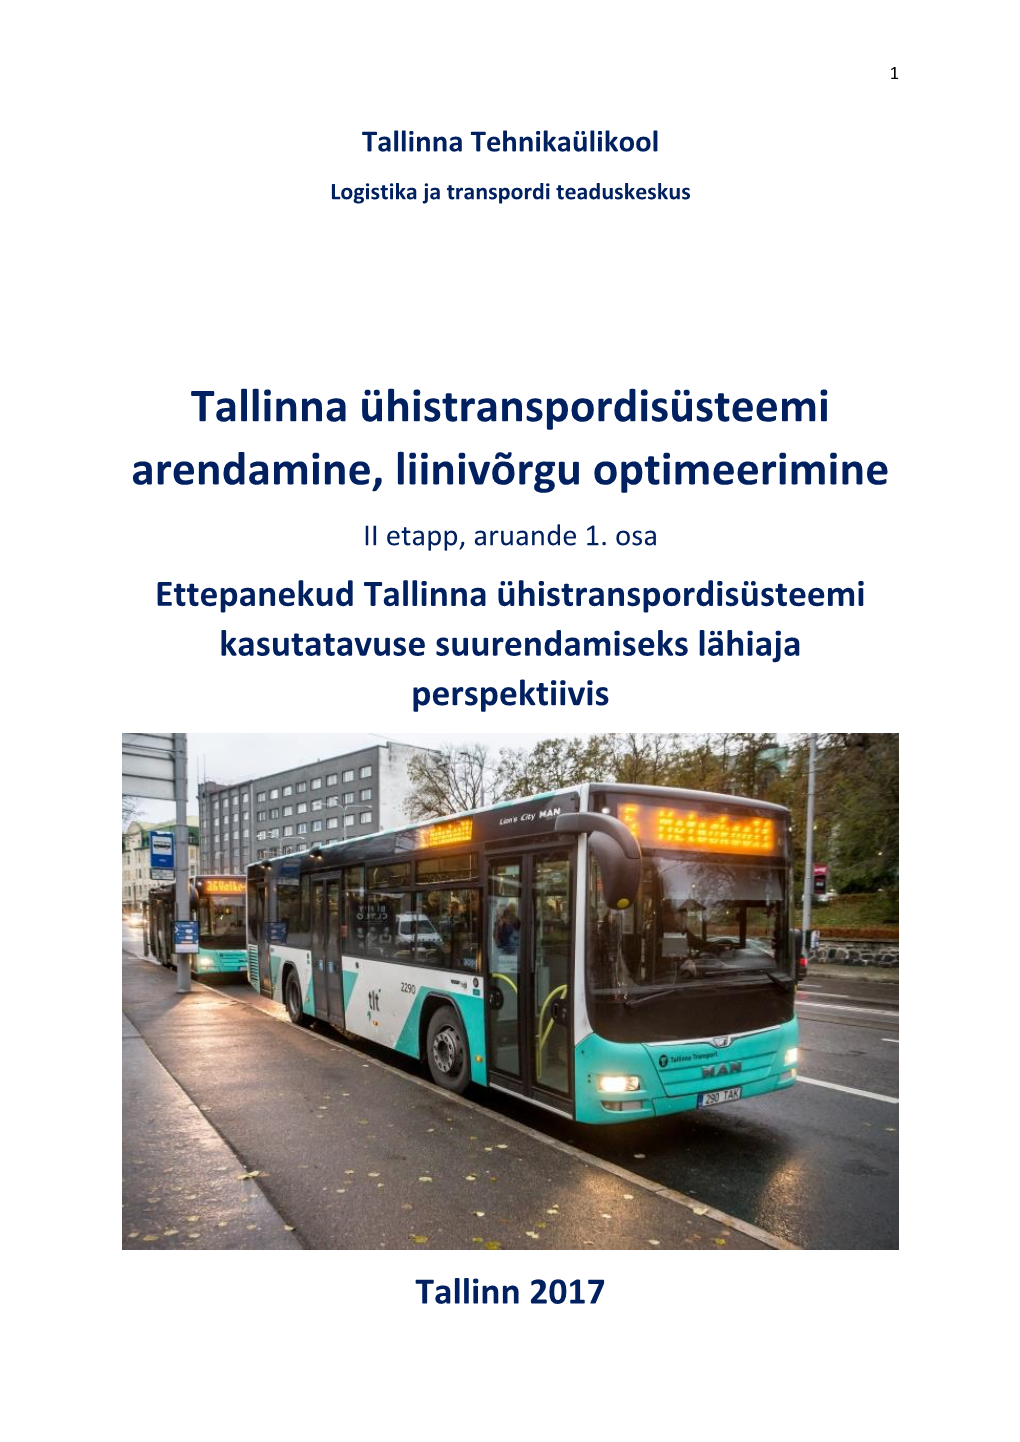 Tallinna Ühistranspordisüsteemi Arendamine, Liinivõrgu Optimeerimine II Etapp, Aruande 1